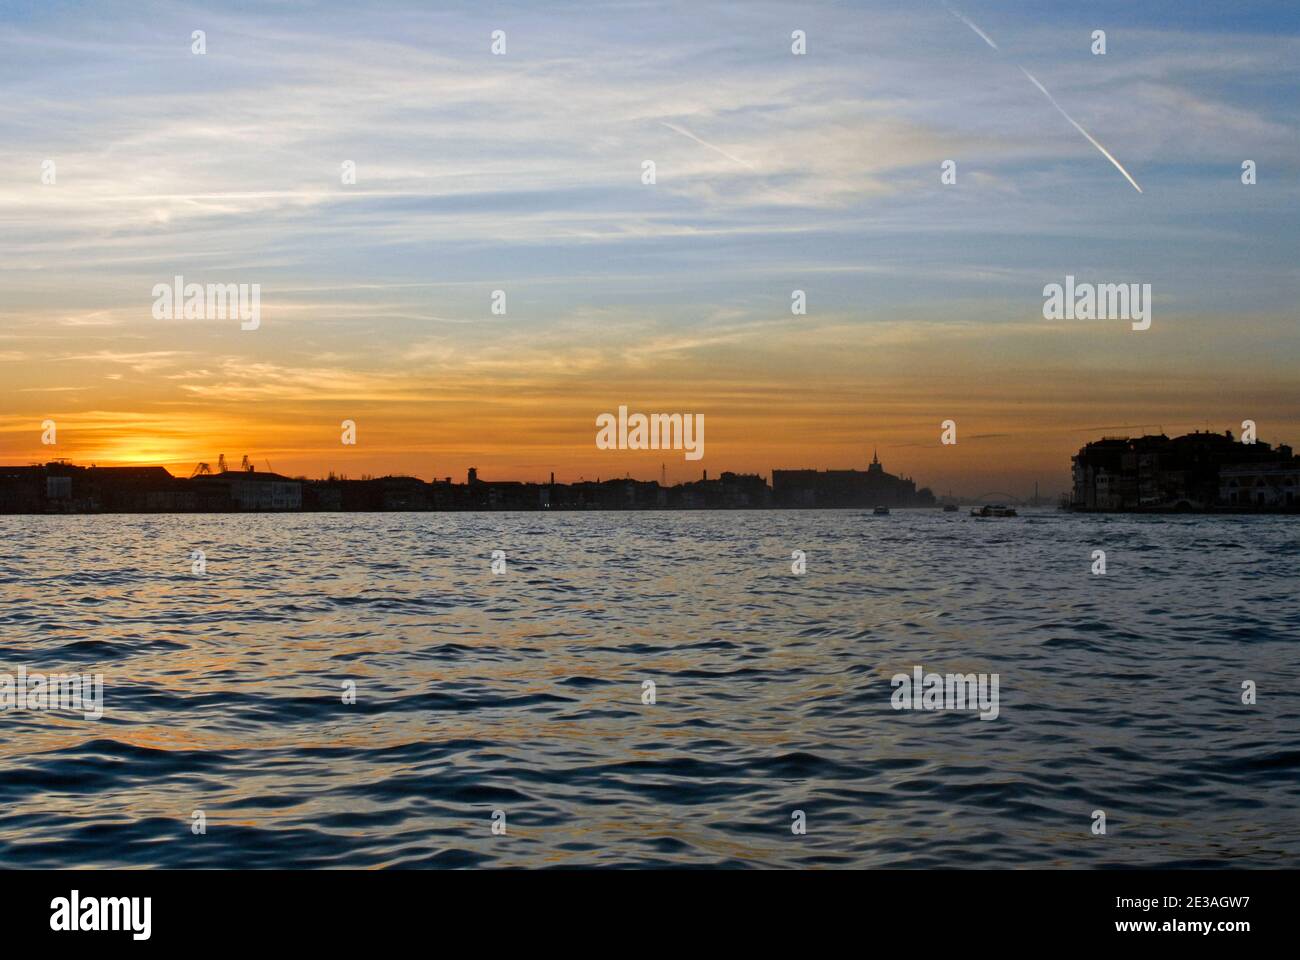 Sunset over San Giorgio Maggiore island, Venice, Italy Stock Photo